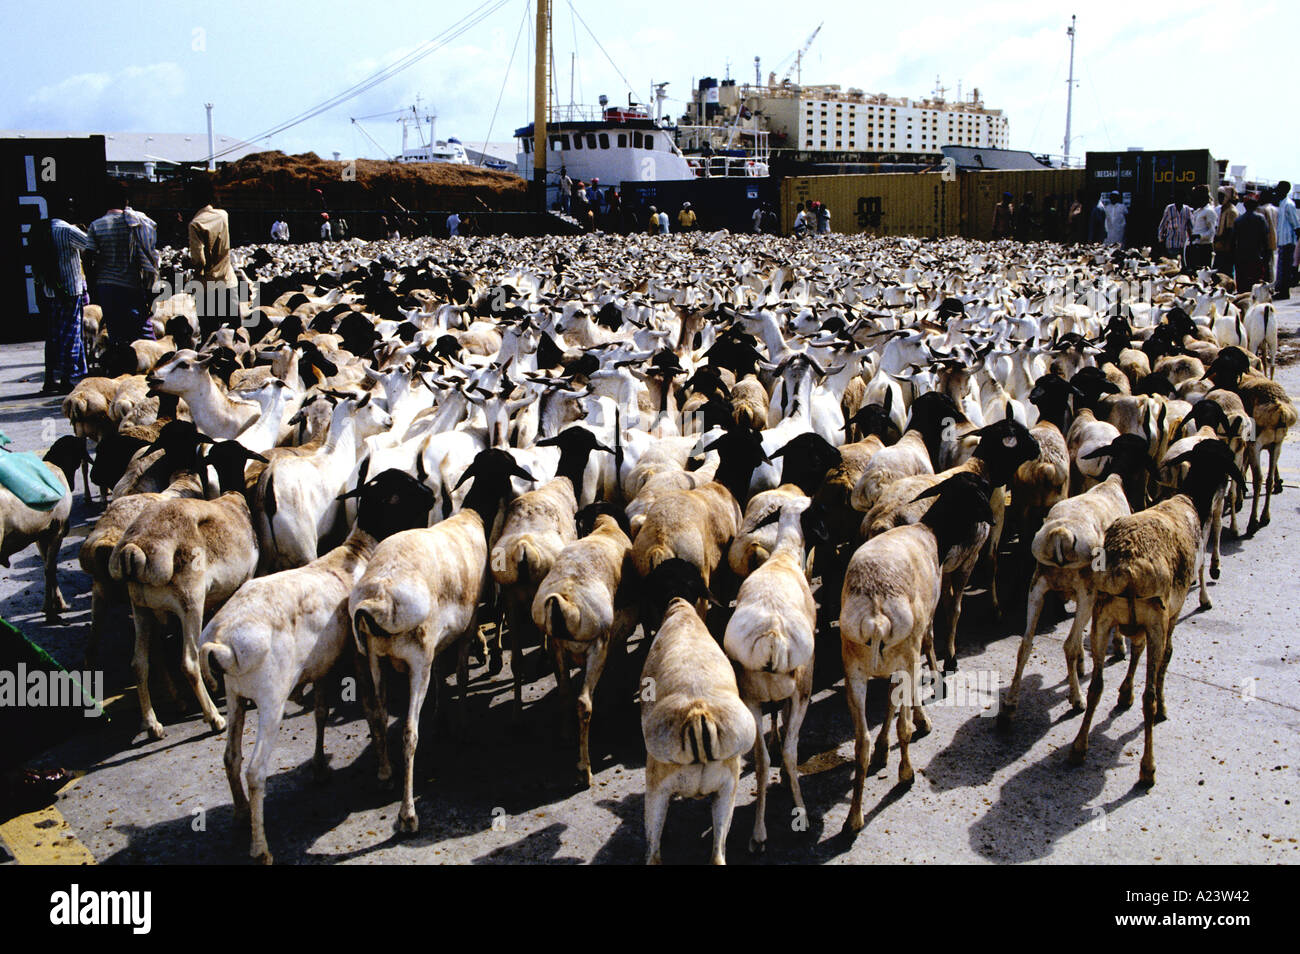 Chèvres massés, numérotées EN MILLIERS PRÊTS POUR L'EXPORTATION VERS LE Moyen-orient sont entassés dans le port de Mogadiscio Banque D'Images